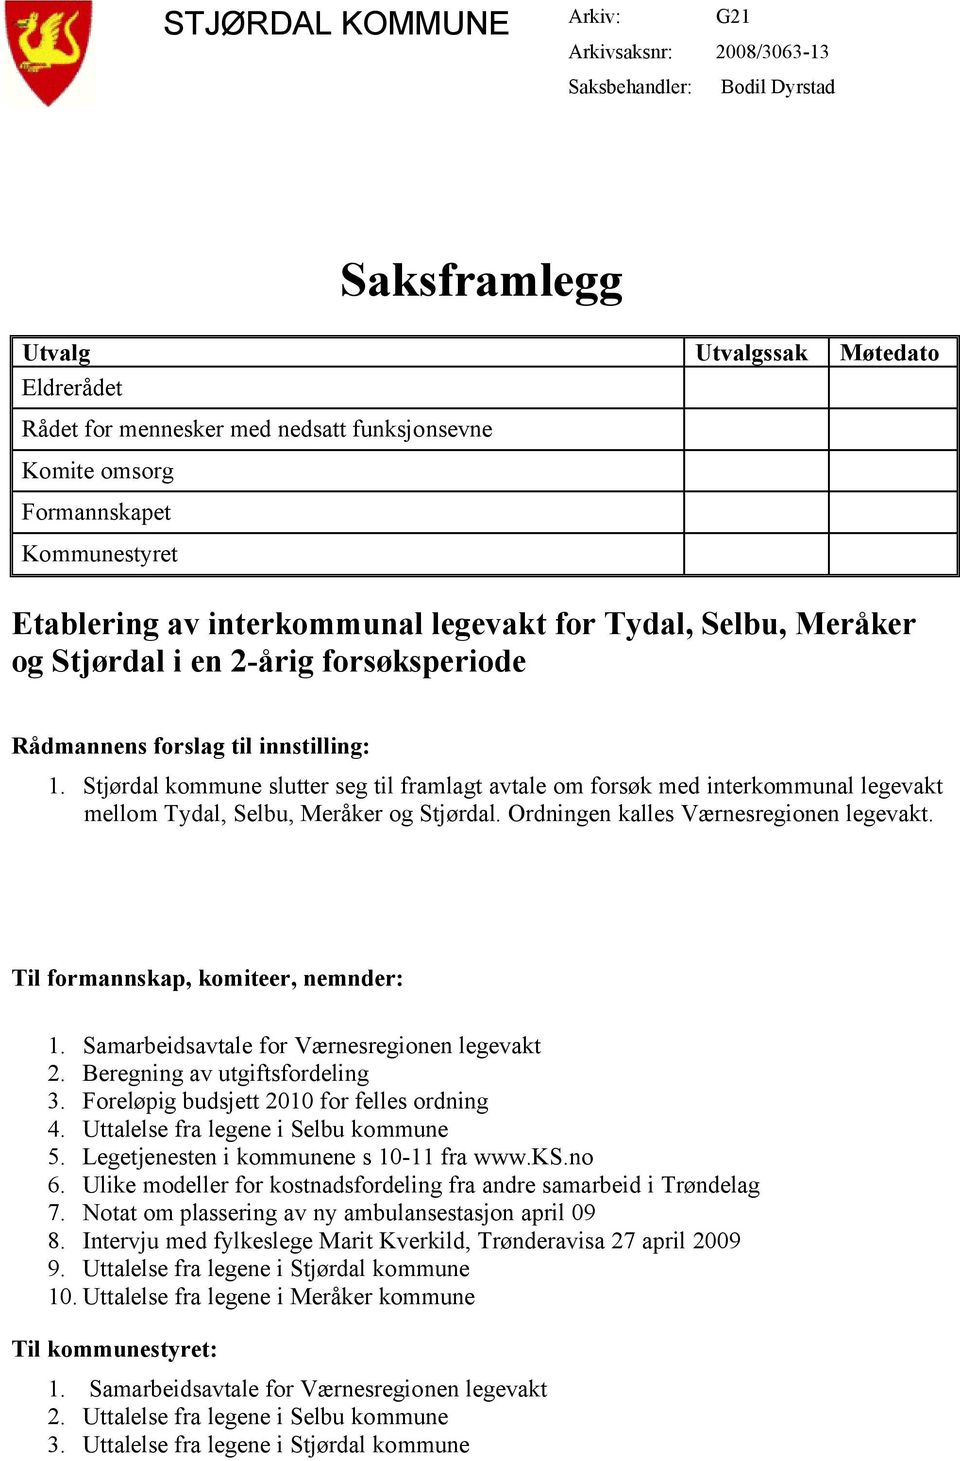 Stjørdal kommune slutter seg til framlagt avtale om forsøk med interkommunal legevakt mellom Tydal, Selbu, Meråker og Stjørdal. Ordningen kalles Værnesregionen legevakt.